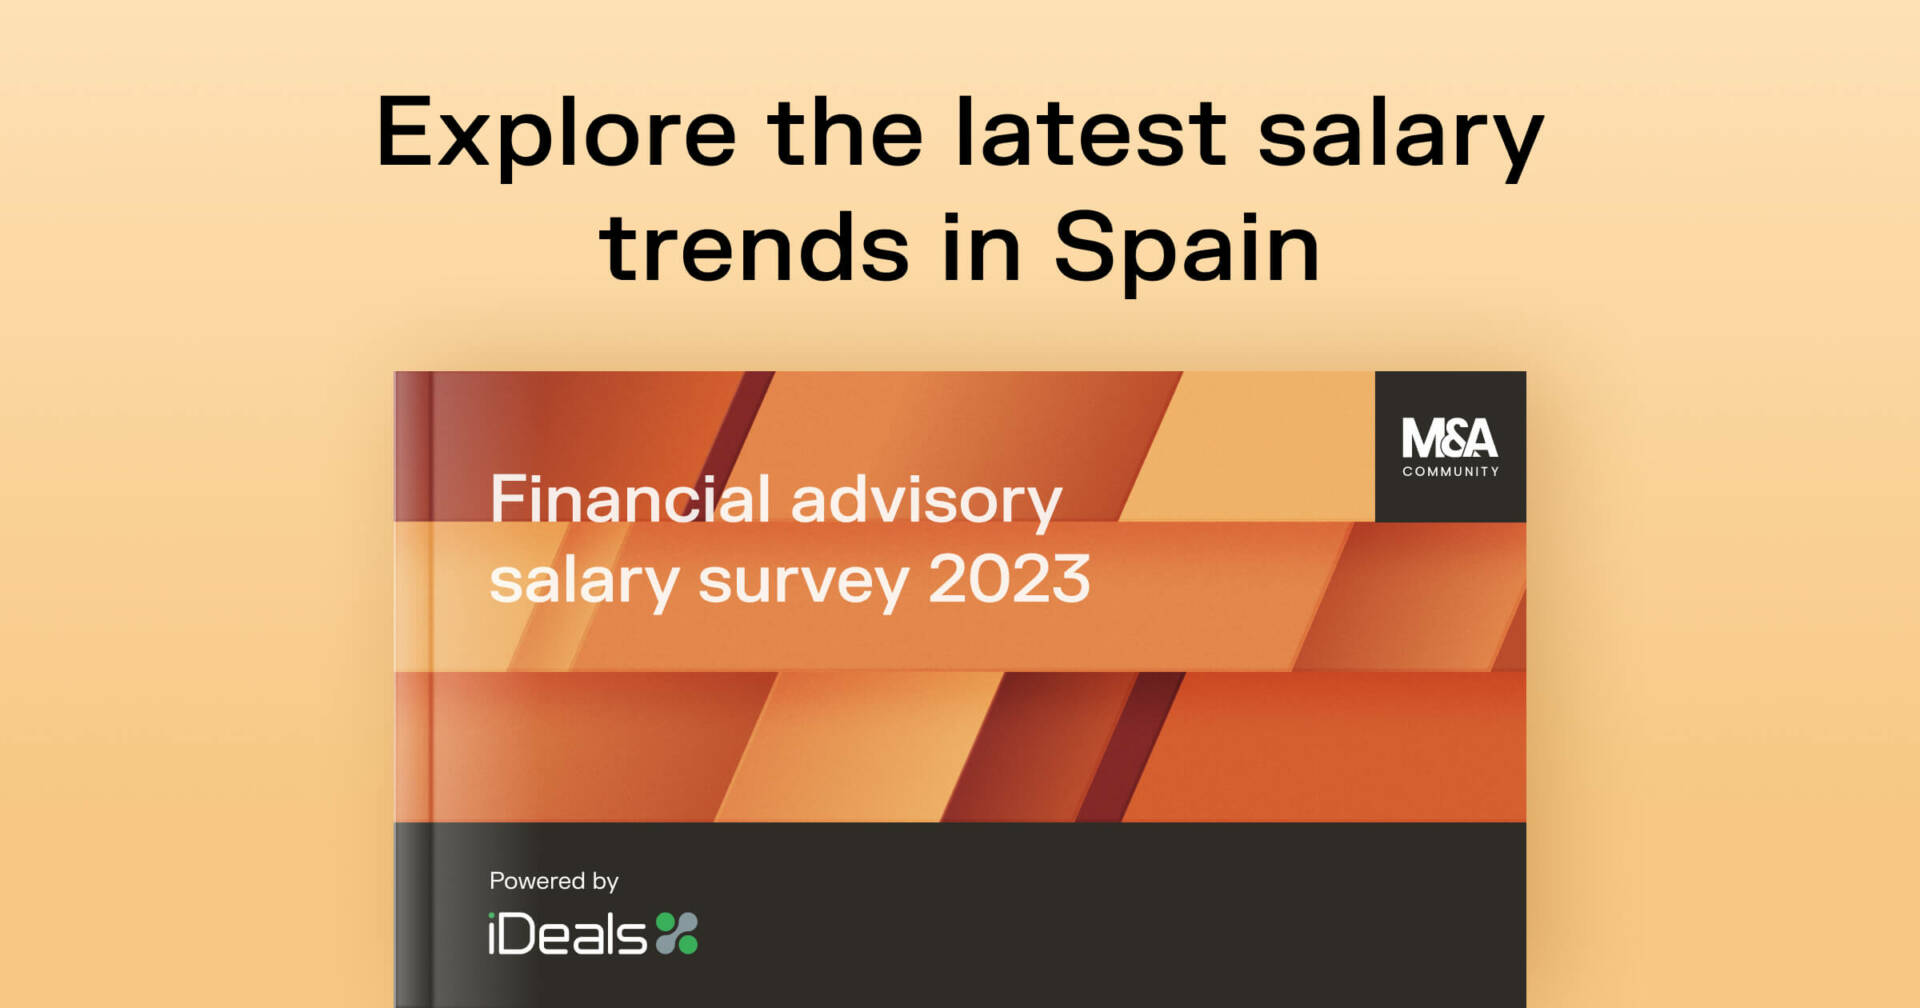 Financial advisory salary survey 2023, Spain iDeals Virtual Data Room